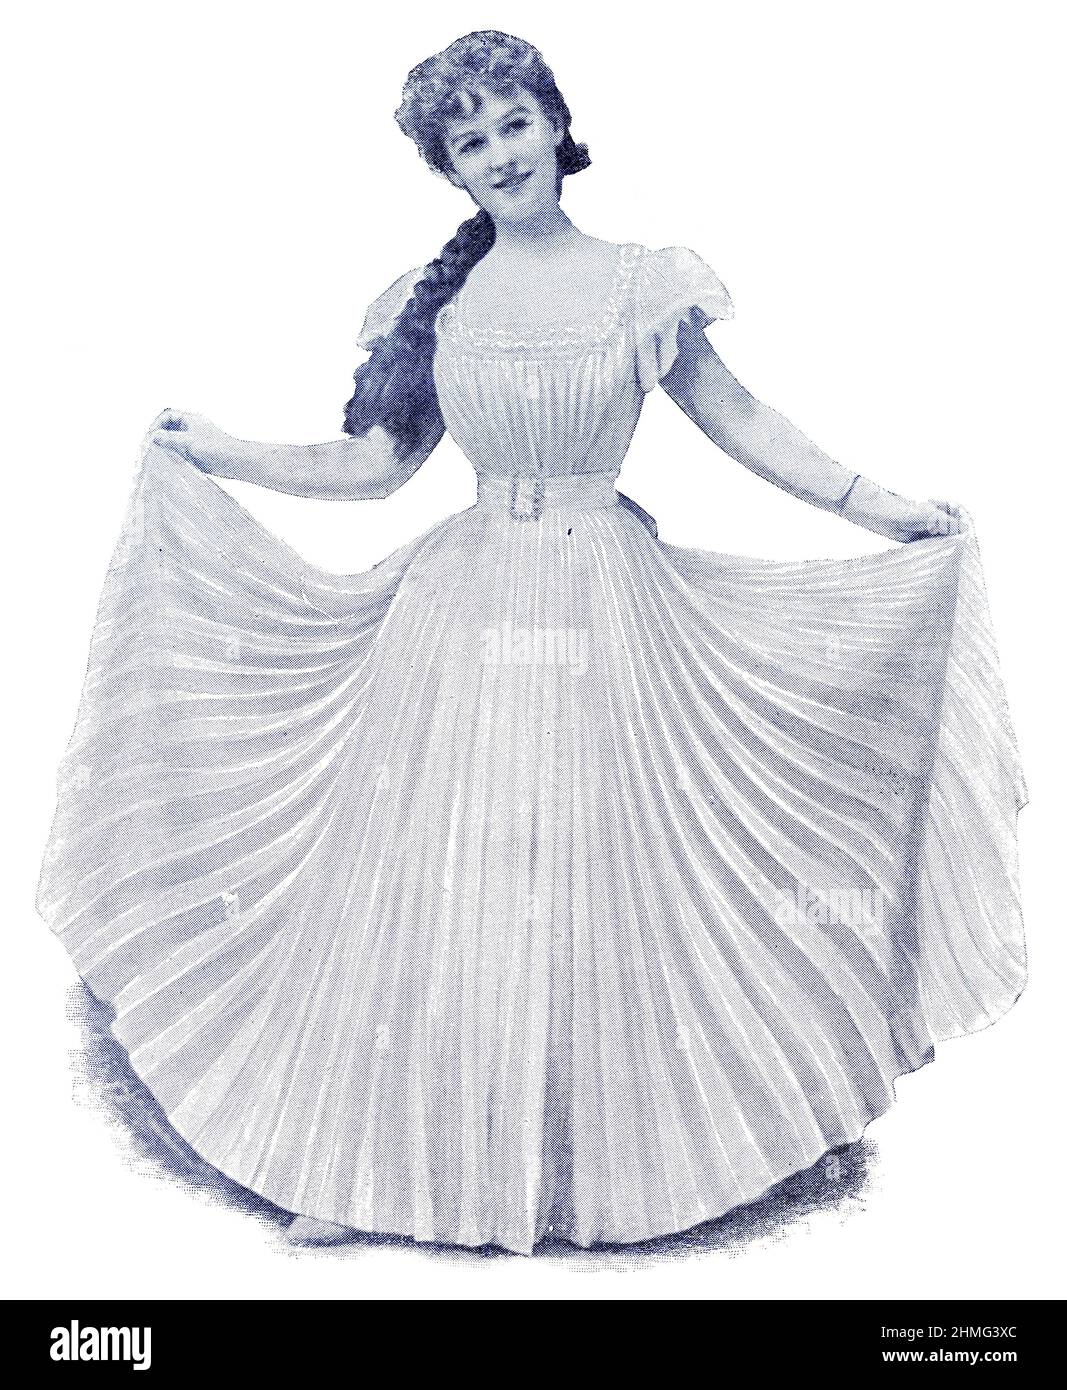 Portrait d'Ethel Haydon par le photographe Alfred Ellis. Ethel Haydon était une actrice et chanteuse australienne. Image du magazine de théâtre franco-allemand illustré « Das Album », 1898. Banque D'Images